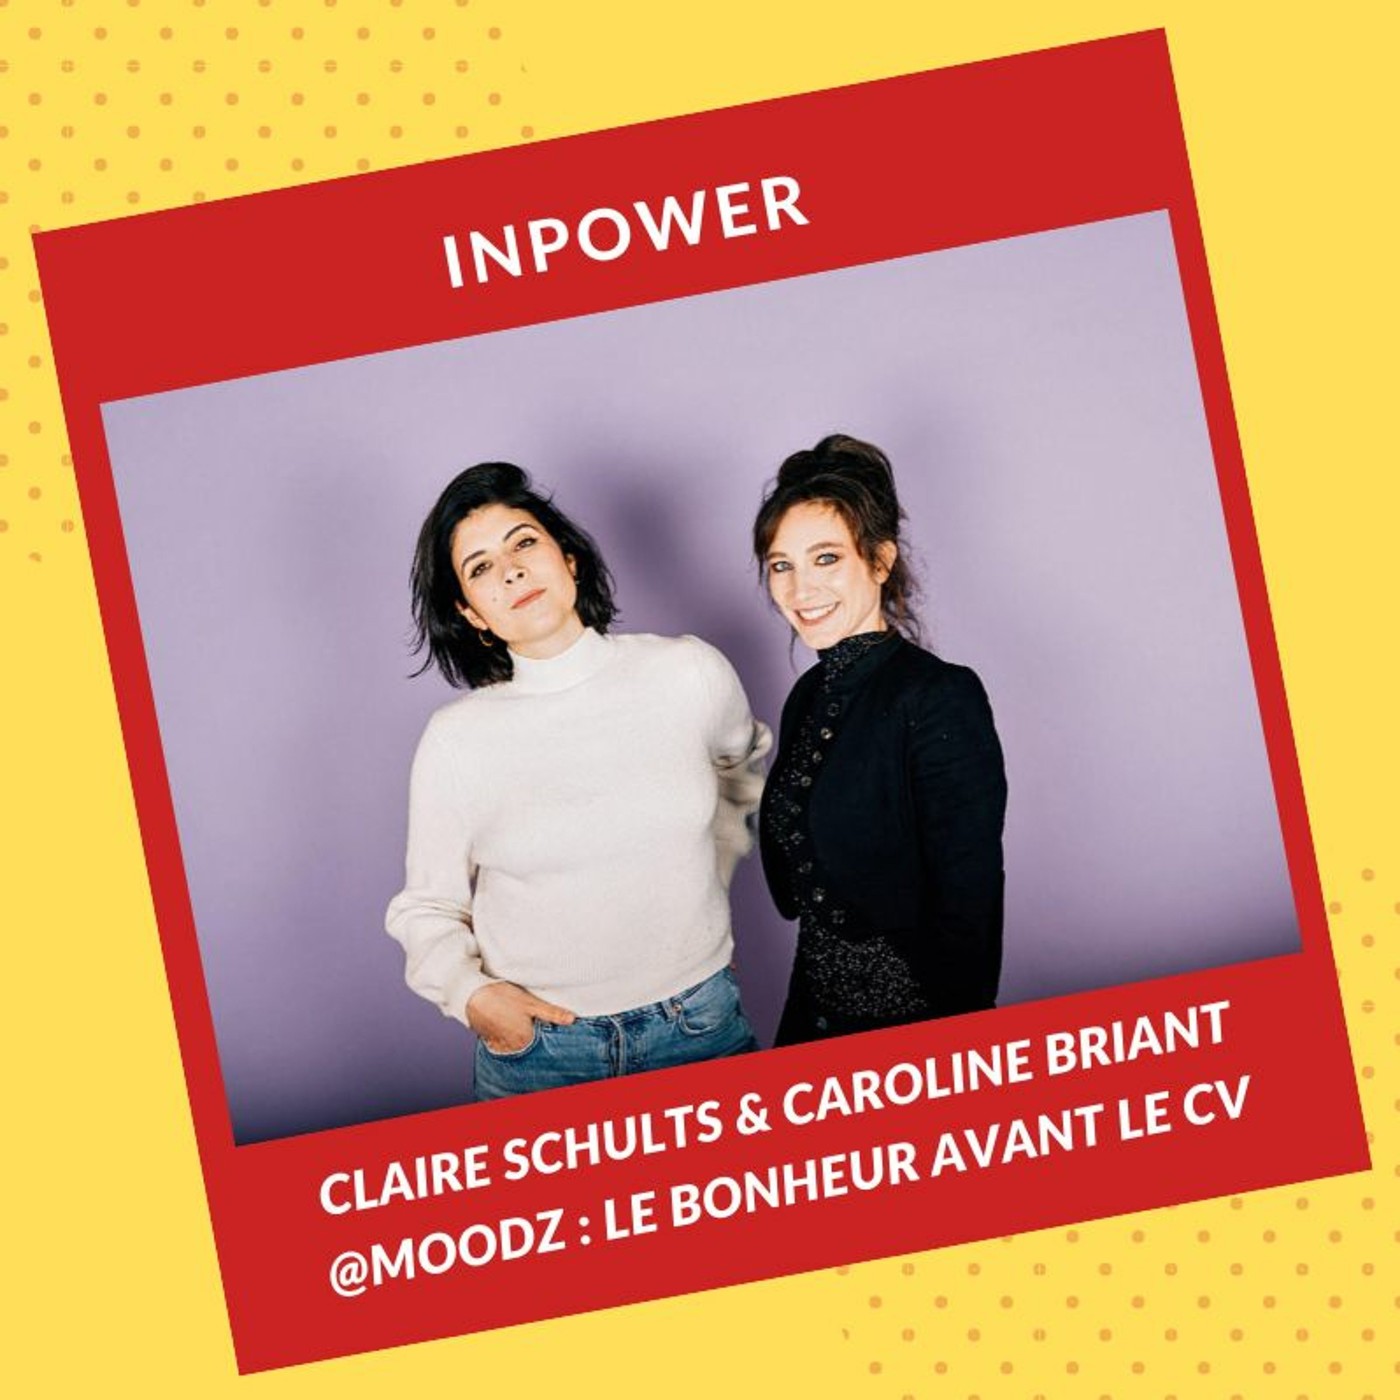 Claire et Caroline, fondatrices de Moodz - Le bonheur avant le CV